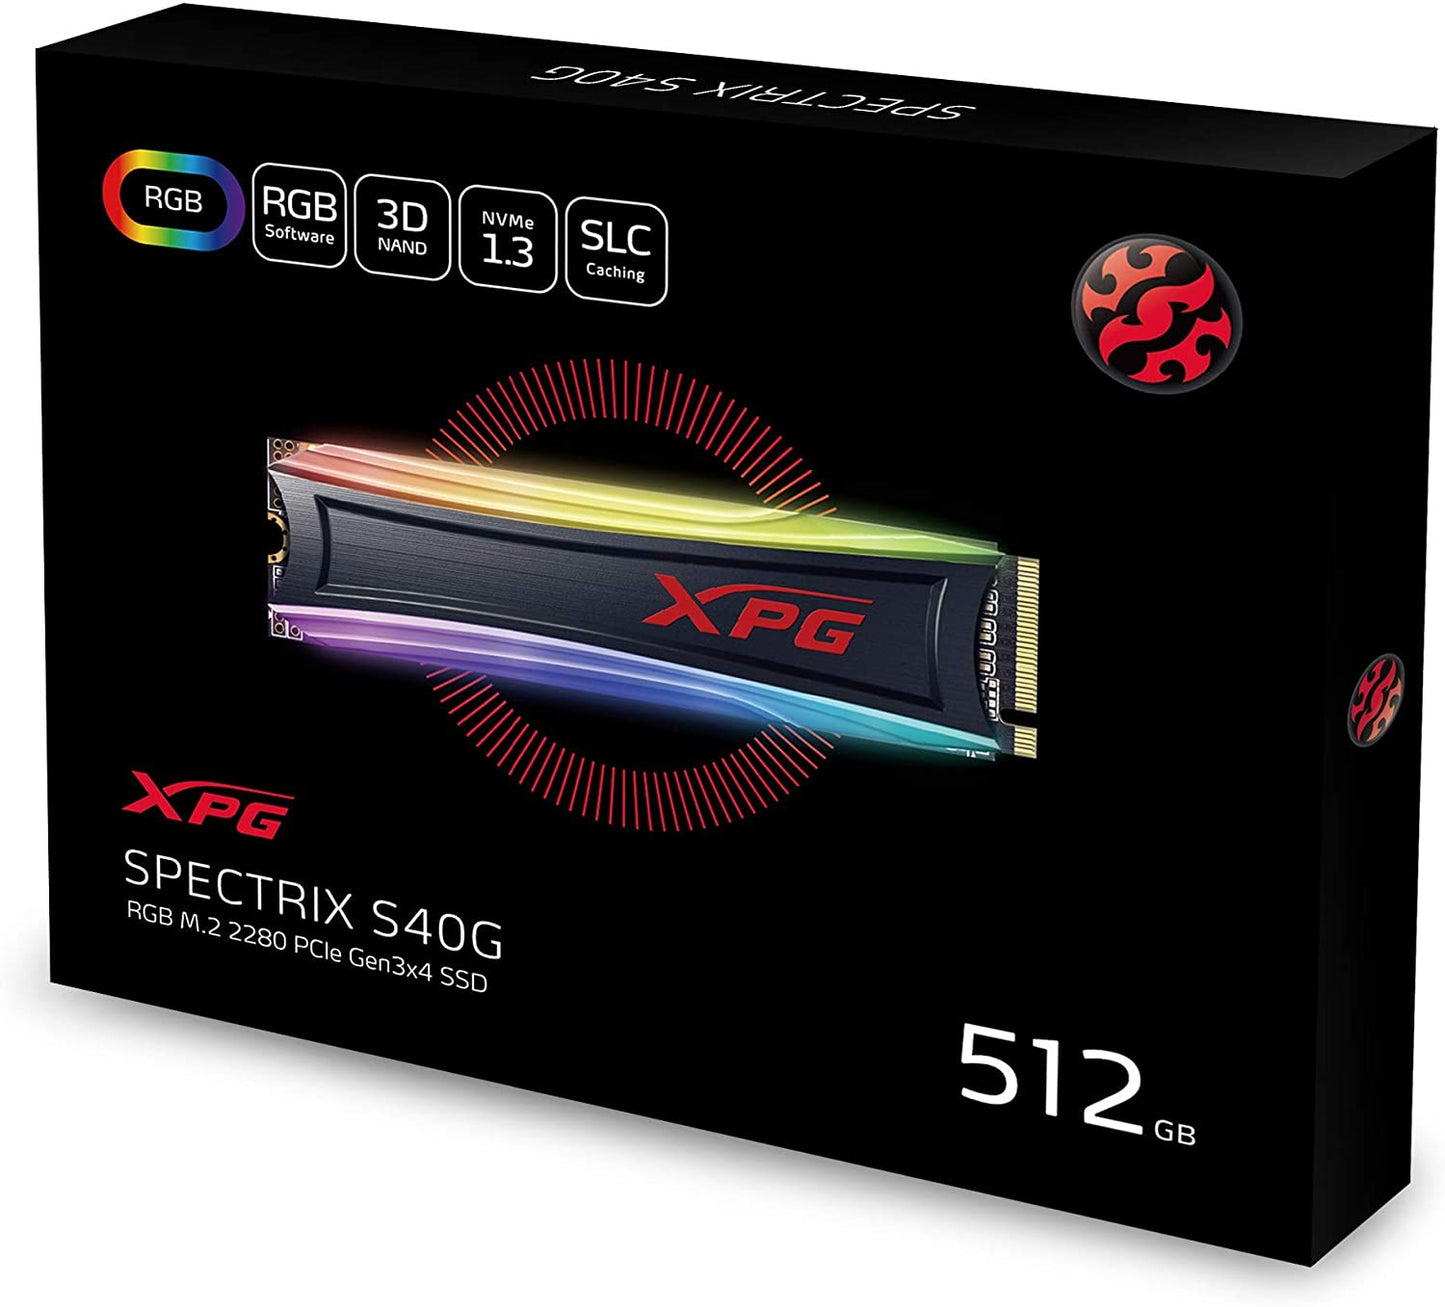 Unidad de Estado Sólido XPG ADATA S40G, 512 GB, PCI Express 3.0, 3500 MB/s, 1900 MB/s